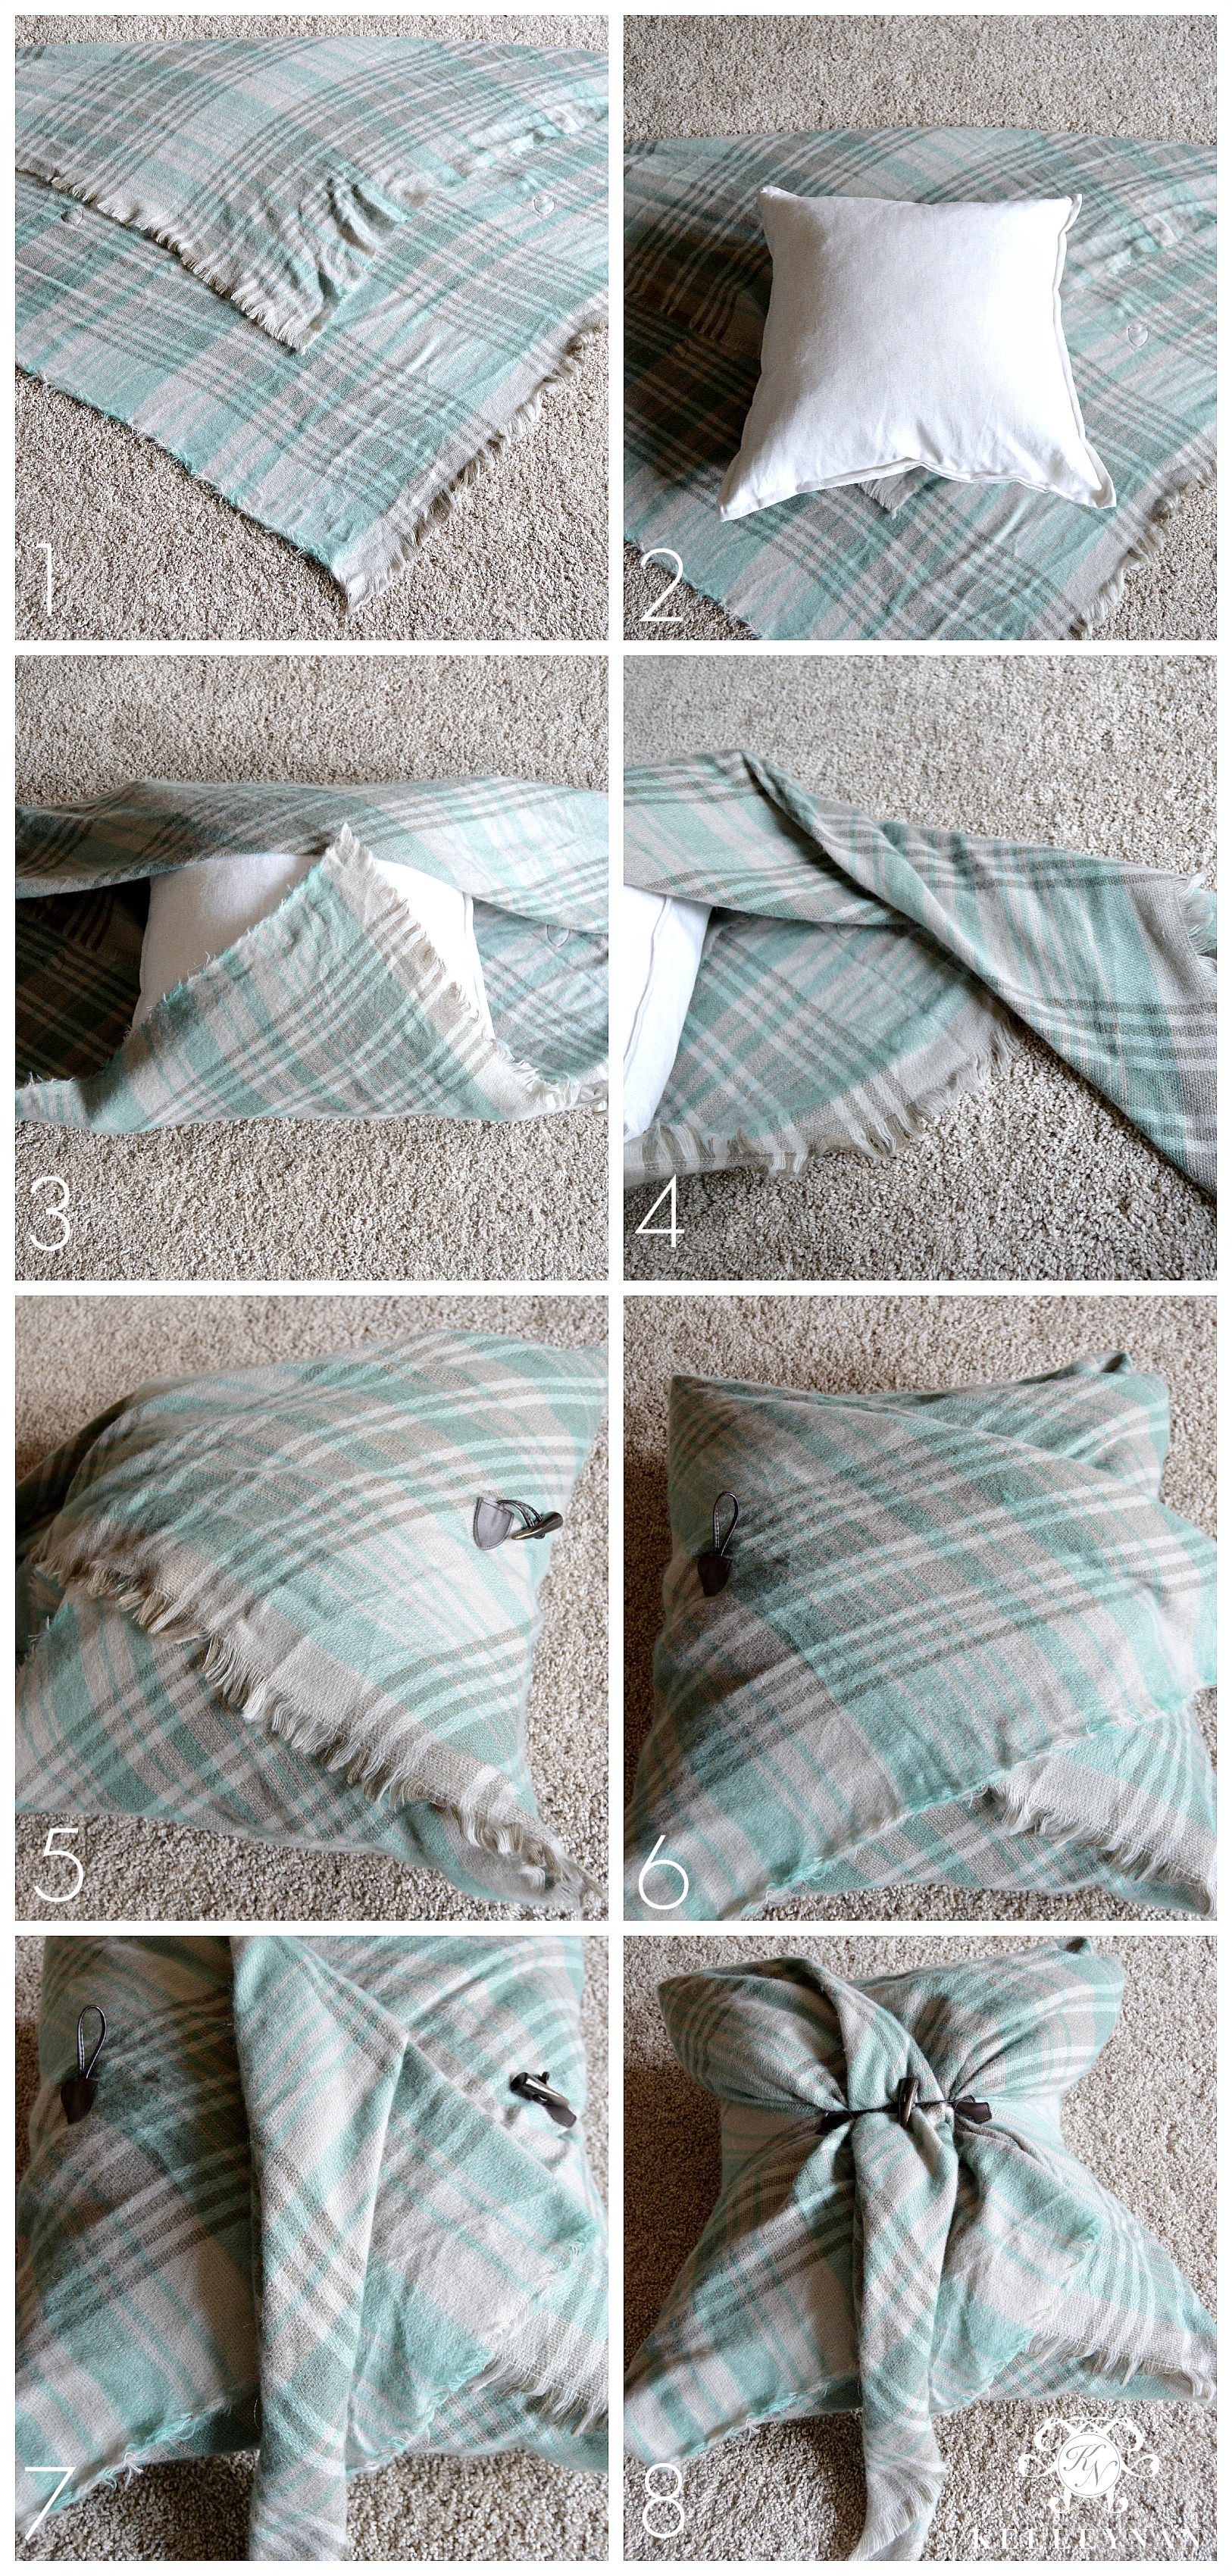 DIY No Sew Lumbar Pillow